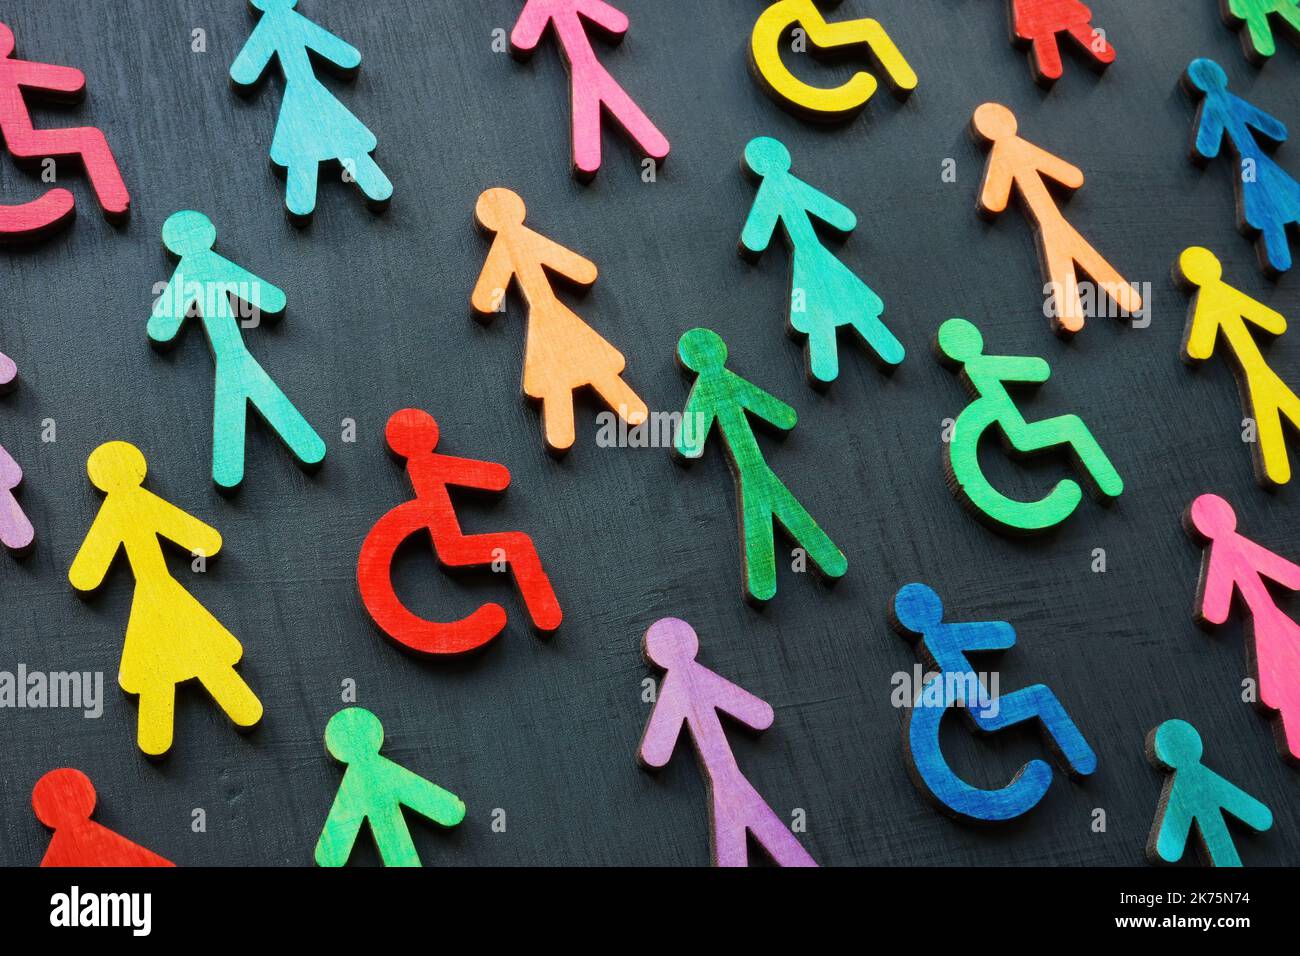 Concetto di diversità e inclusione. Figurine colorate sulla superficie scura. Foto Stock